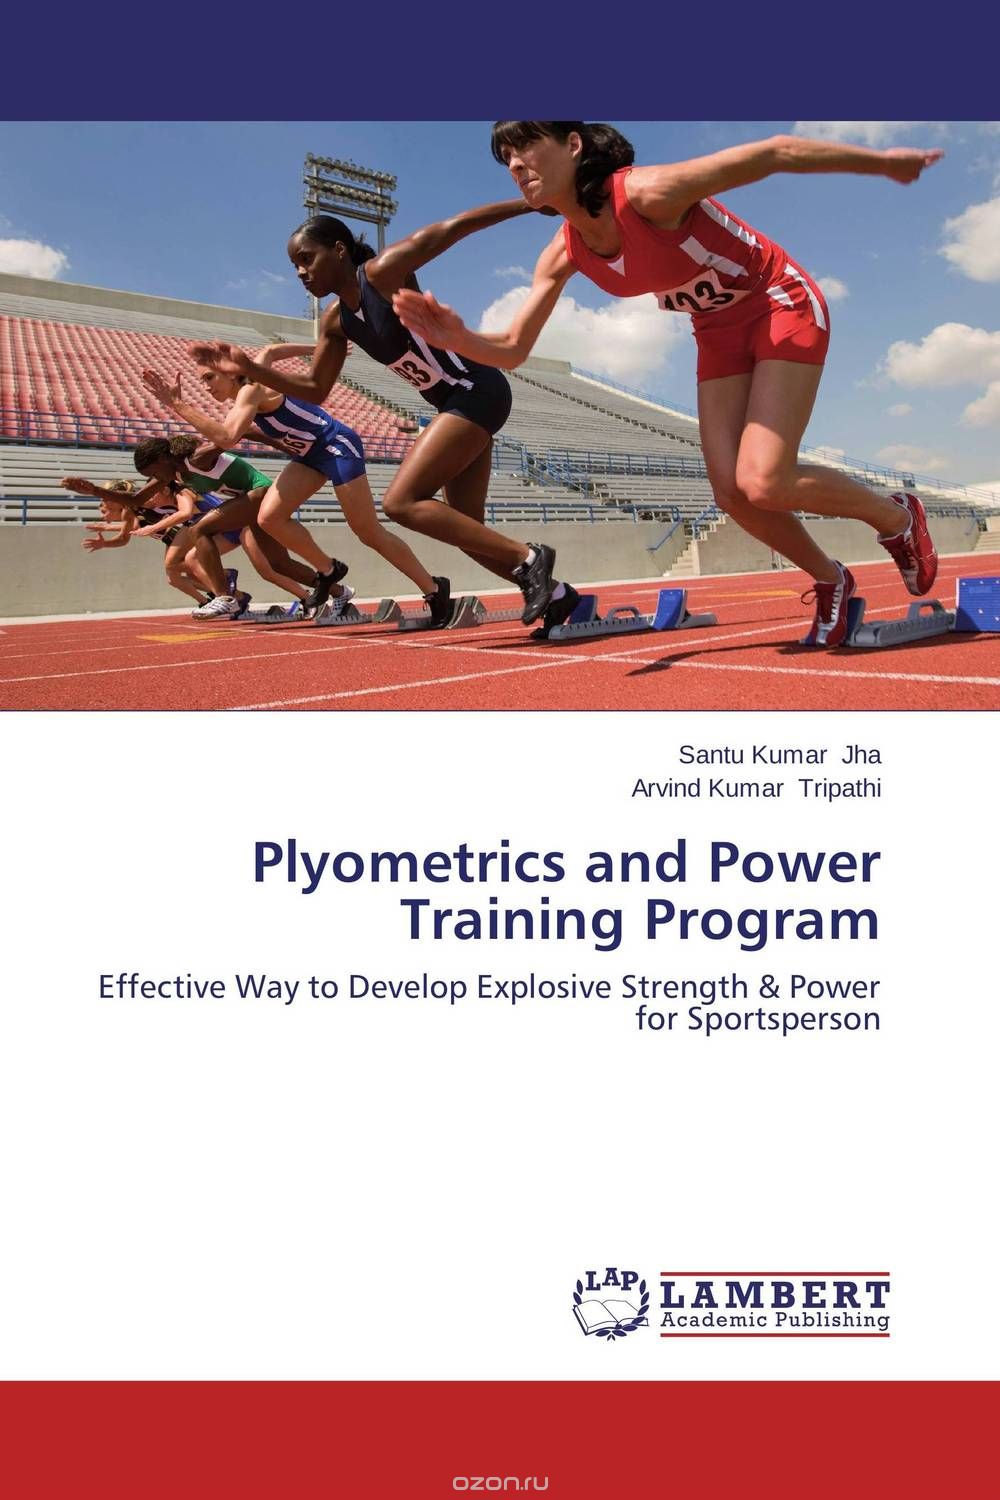 Скачать книгу "Plyometrics and Power Training Program"